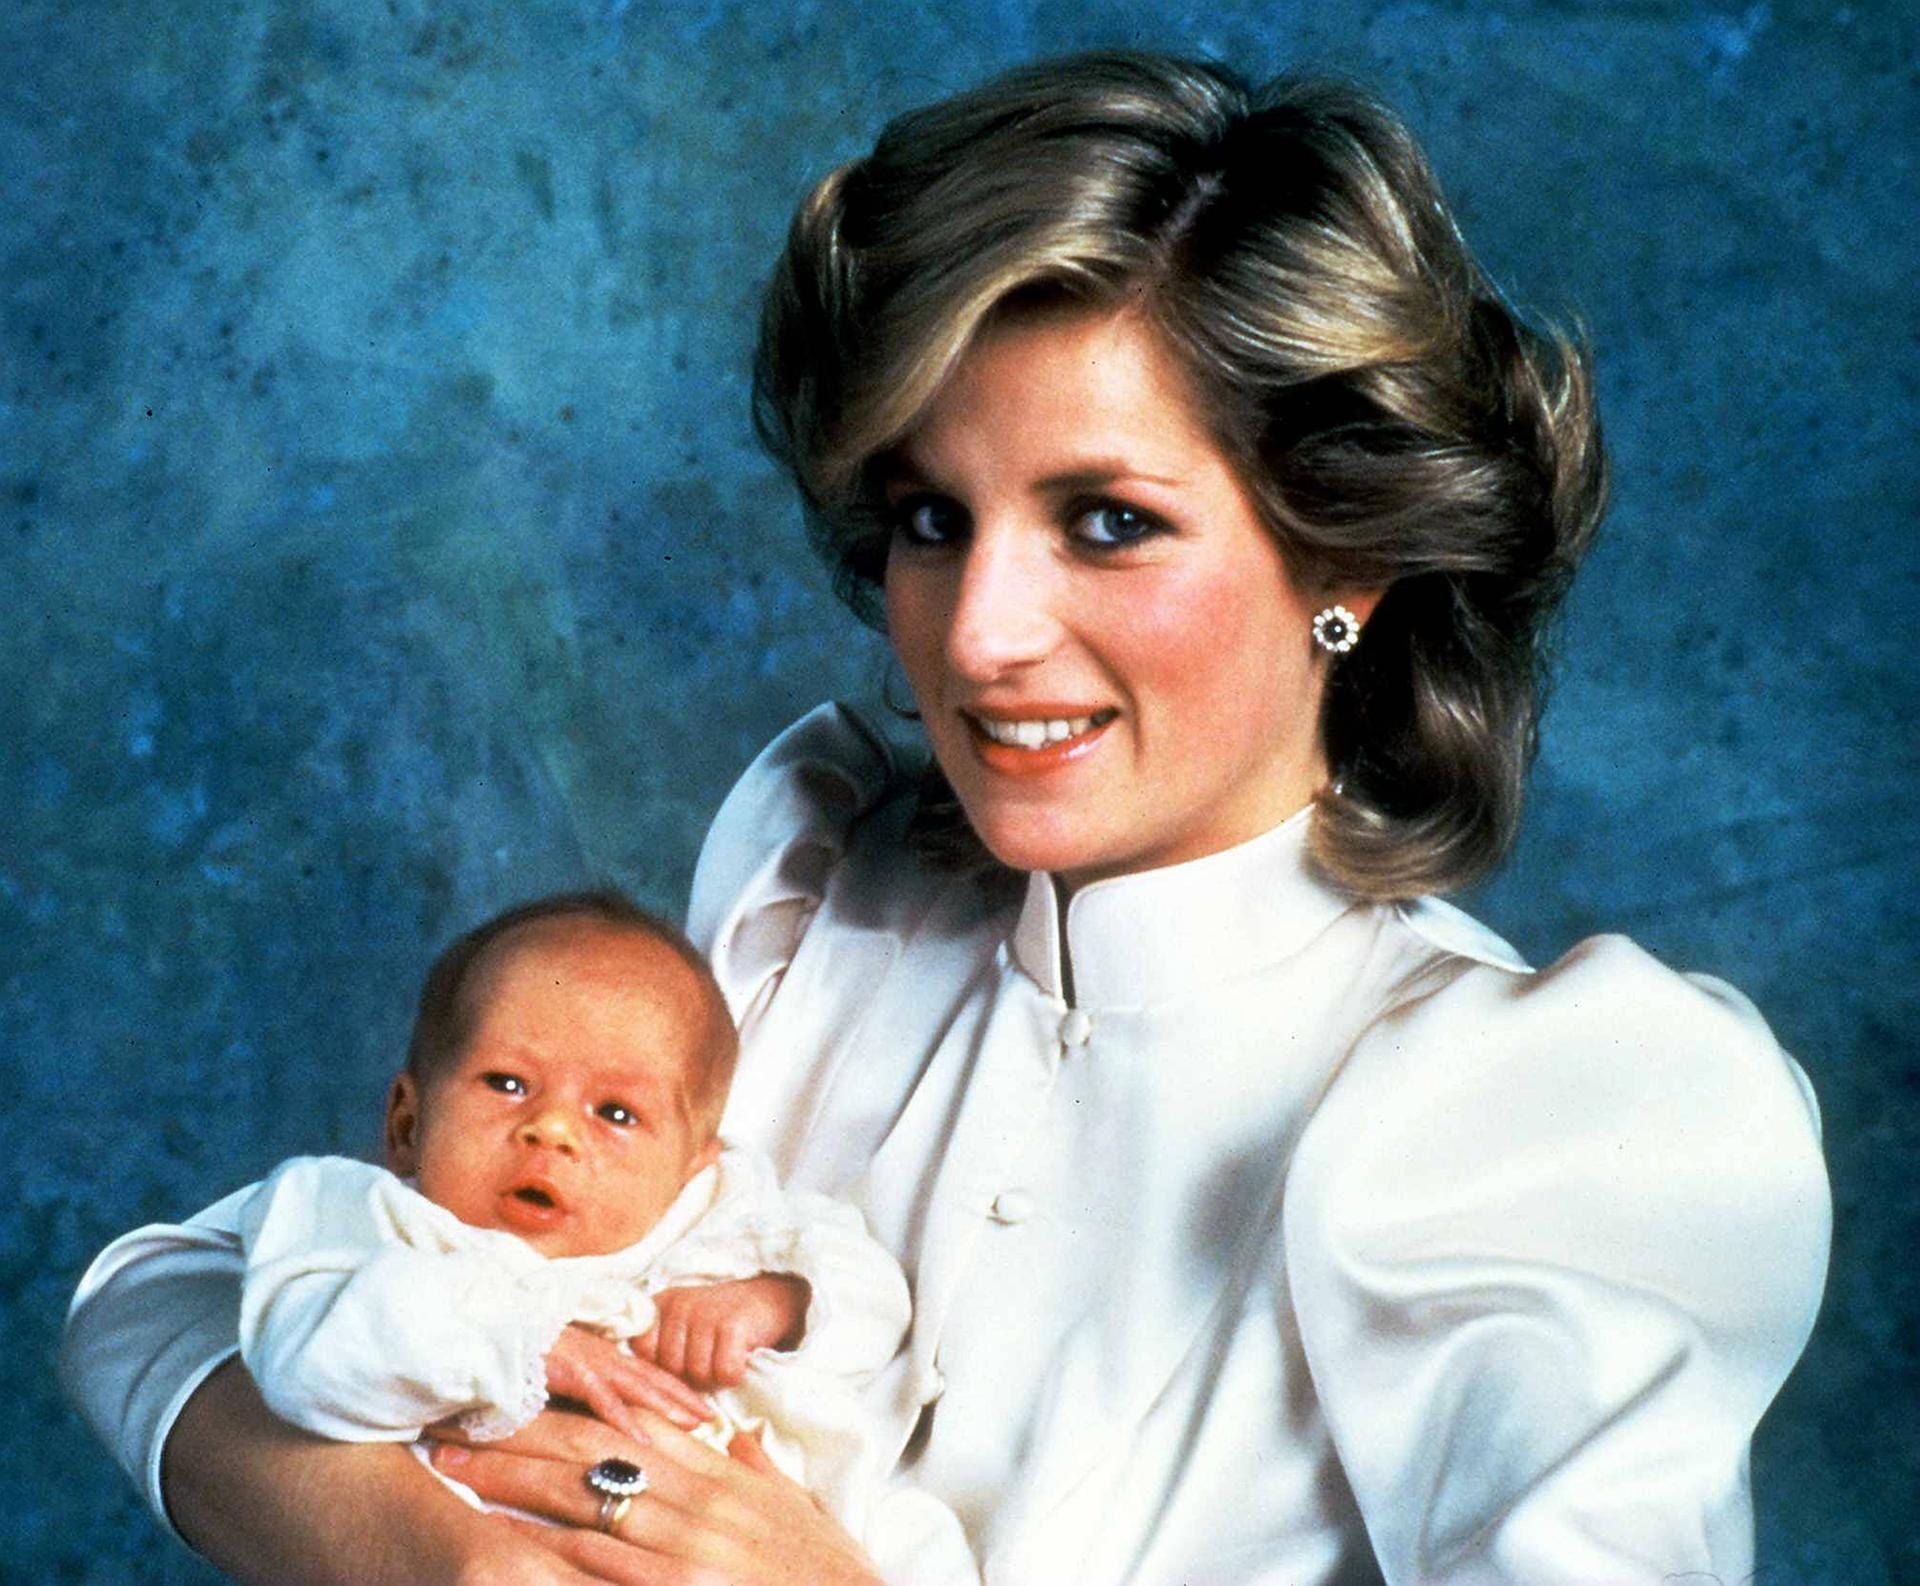 Prinz Harry wurde am 15. September 1984 geboren: Hier ist er auf dem Arm seiner verstorbenen Mutter Lady Di.